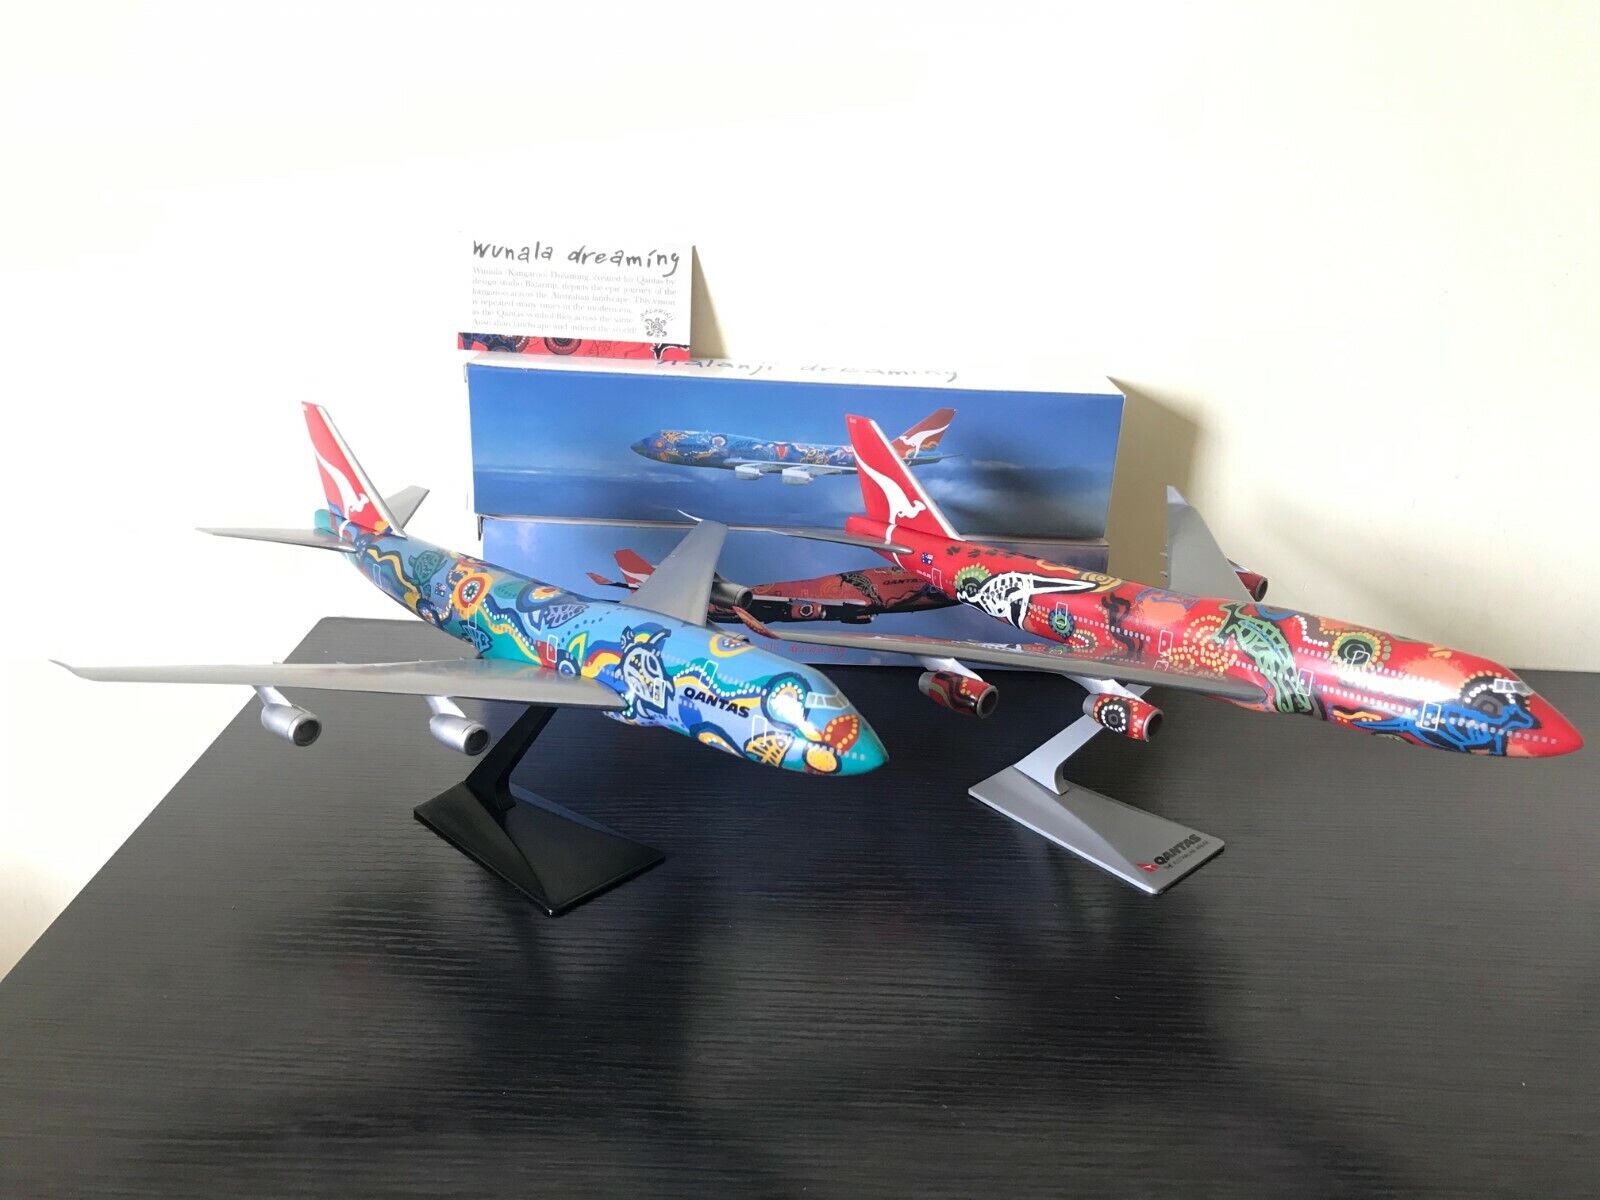 2-Set 1/250 Qantas Nalanji Wunala Dreaming Boeing B747-300/-400 Airplane Models